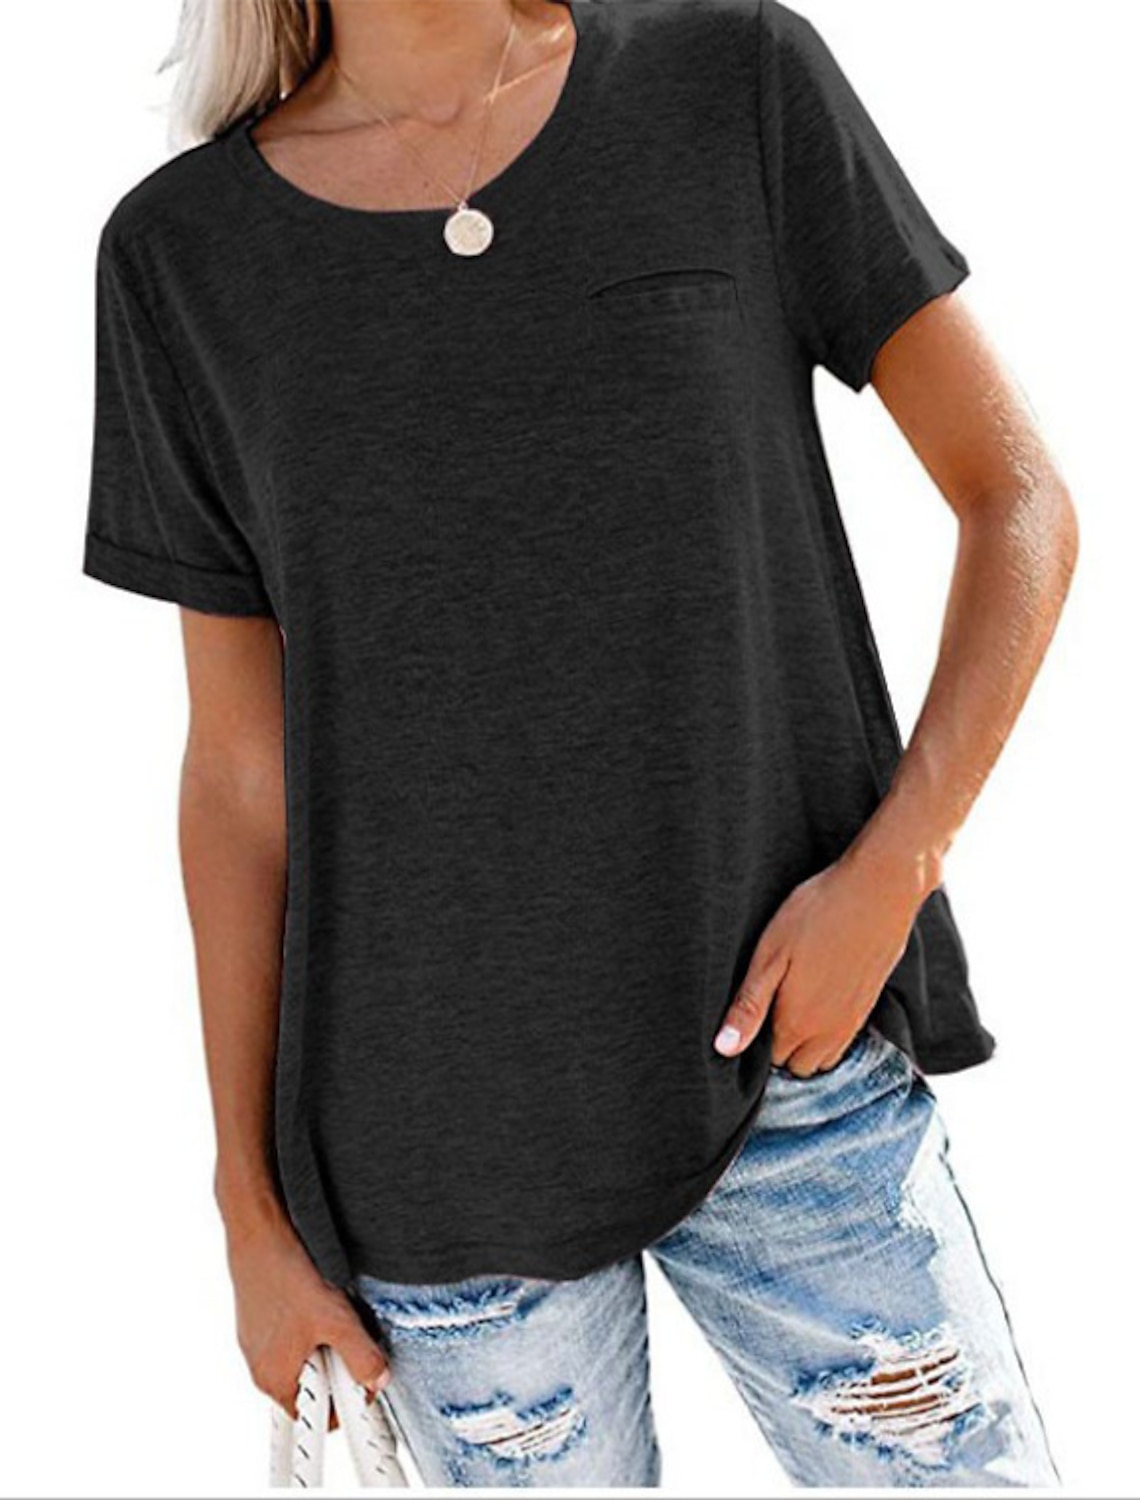 XXL con bolsillos iChunhua para mujer con cuello redondo Camiseta informal de manga larga tallas S